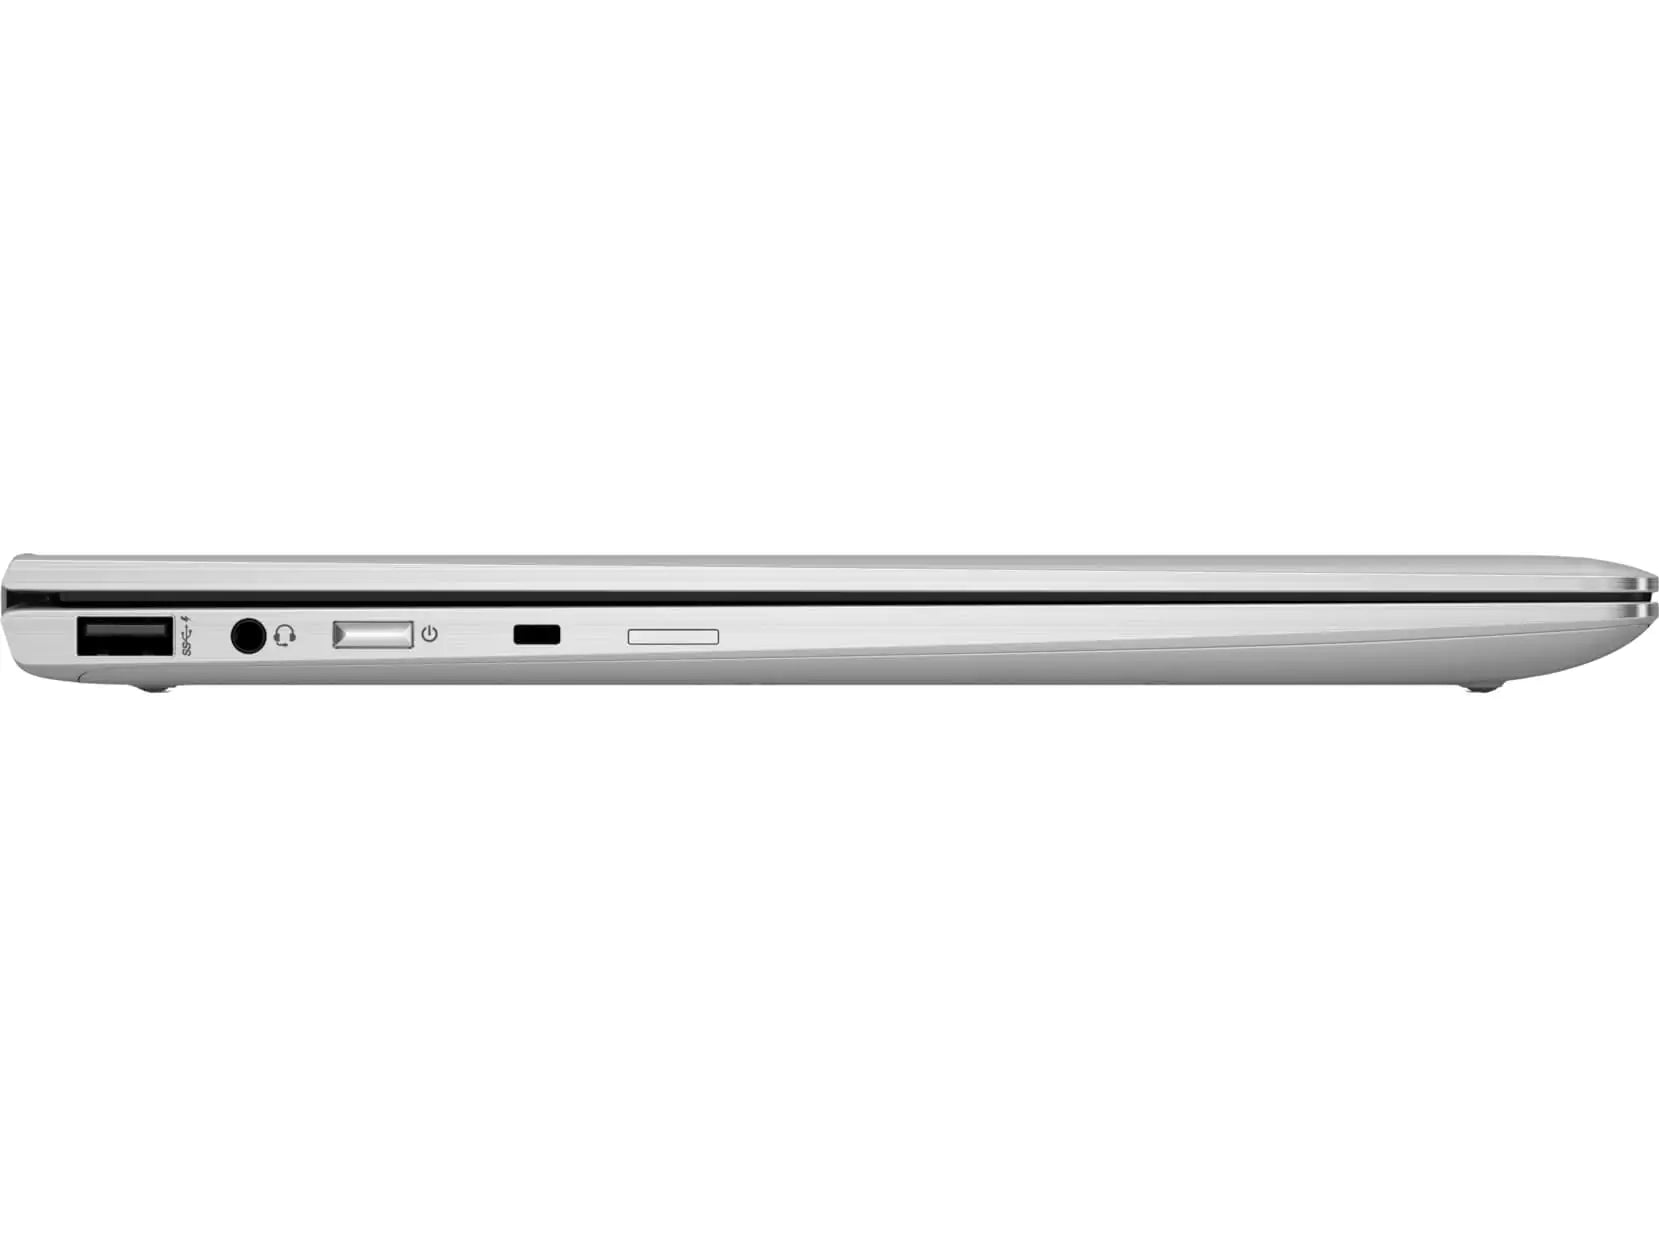 HP EliteBook x360 1040 G6